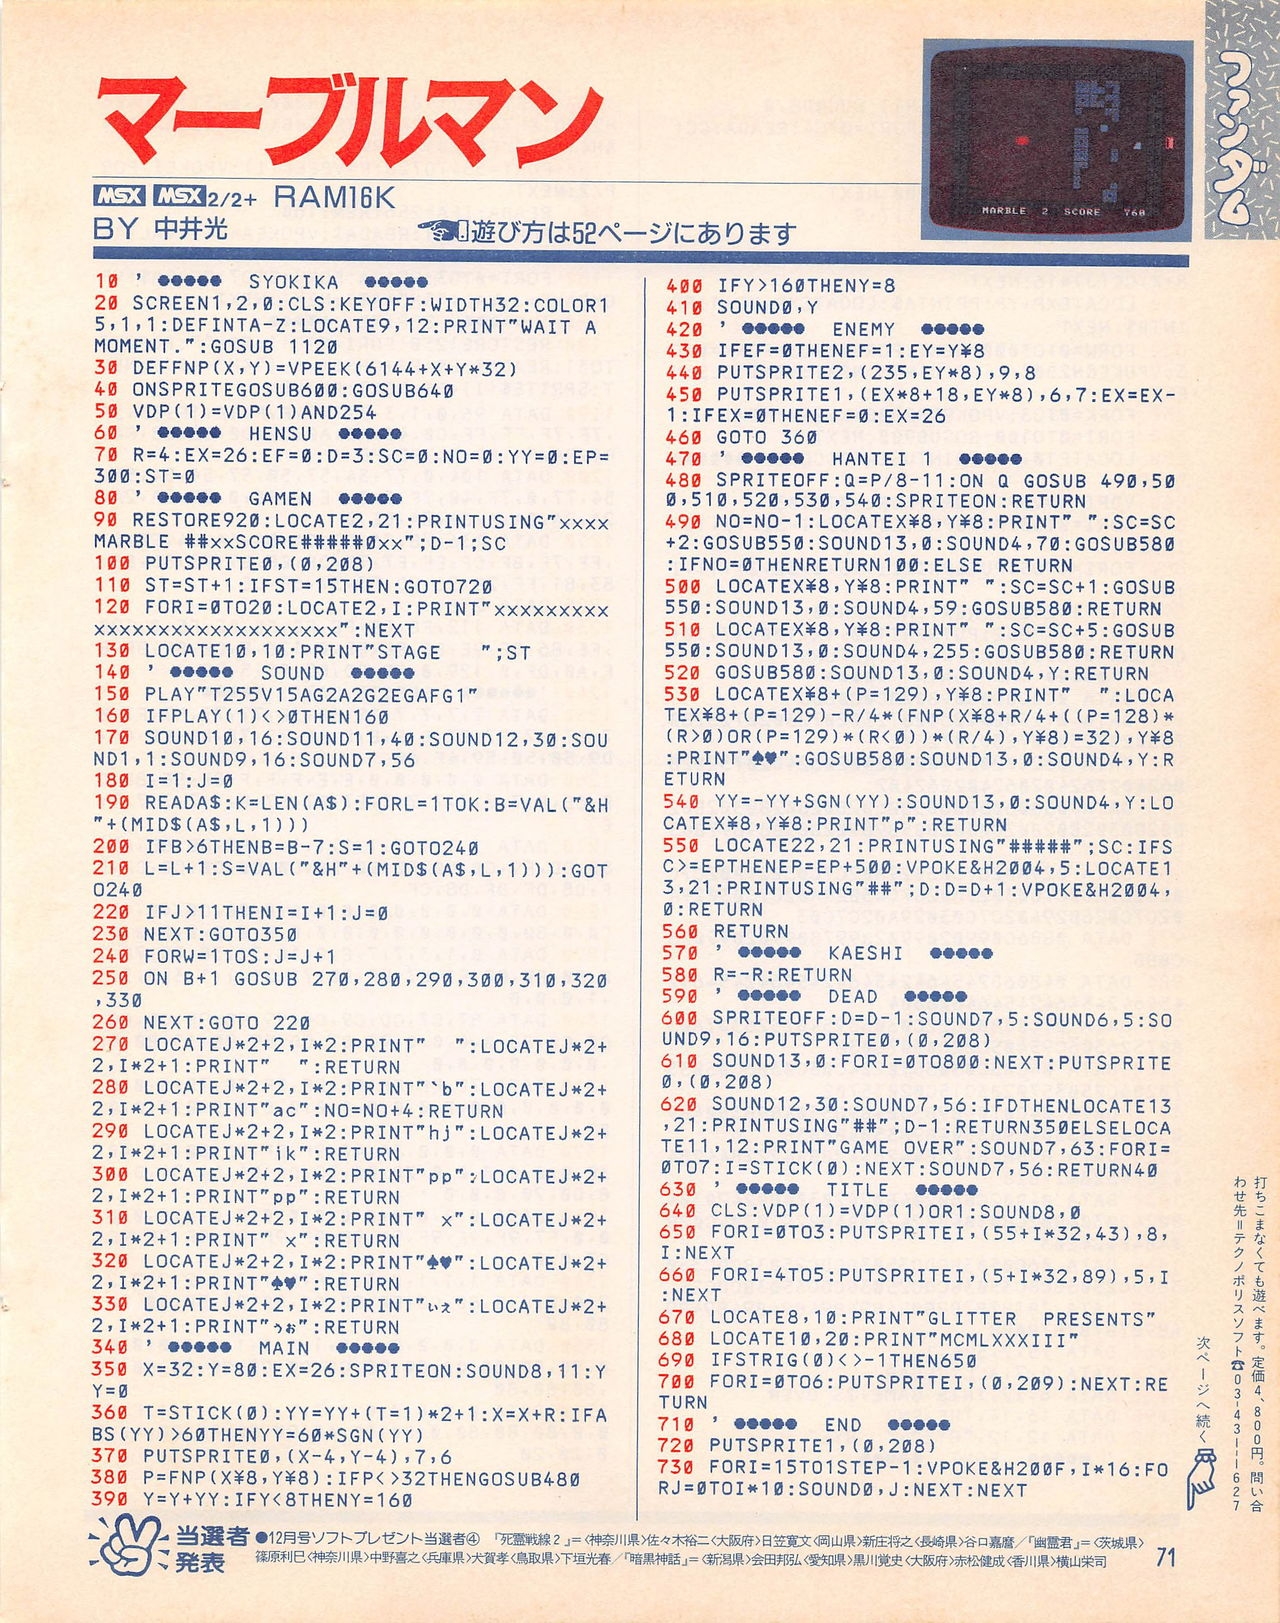 MSX Fan 1989-02 70